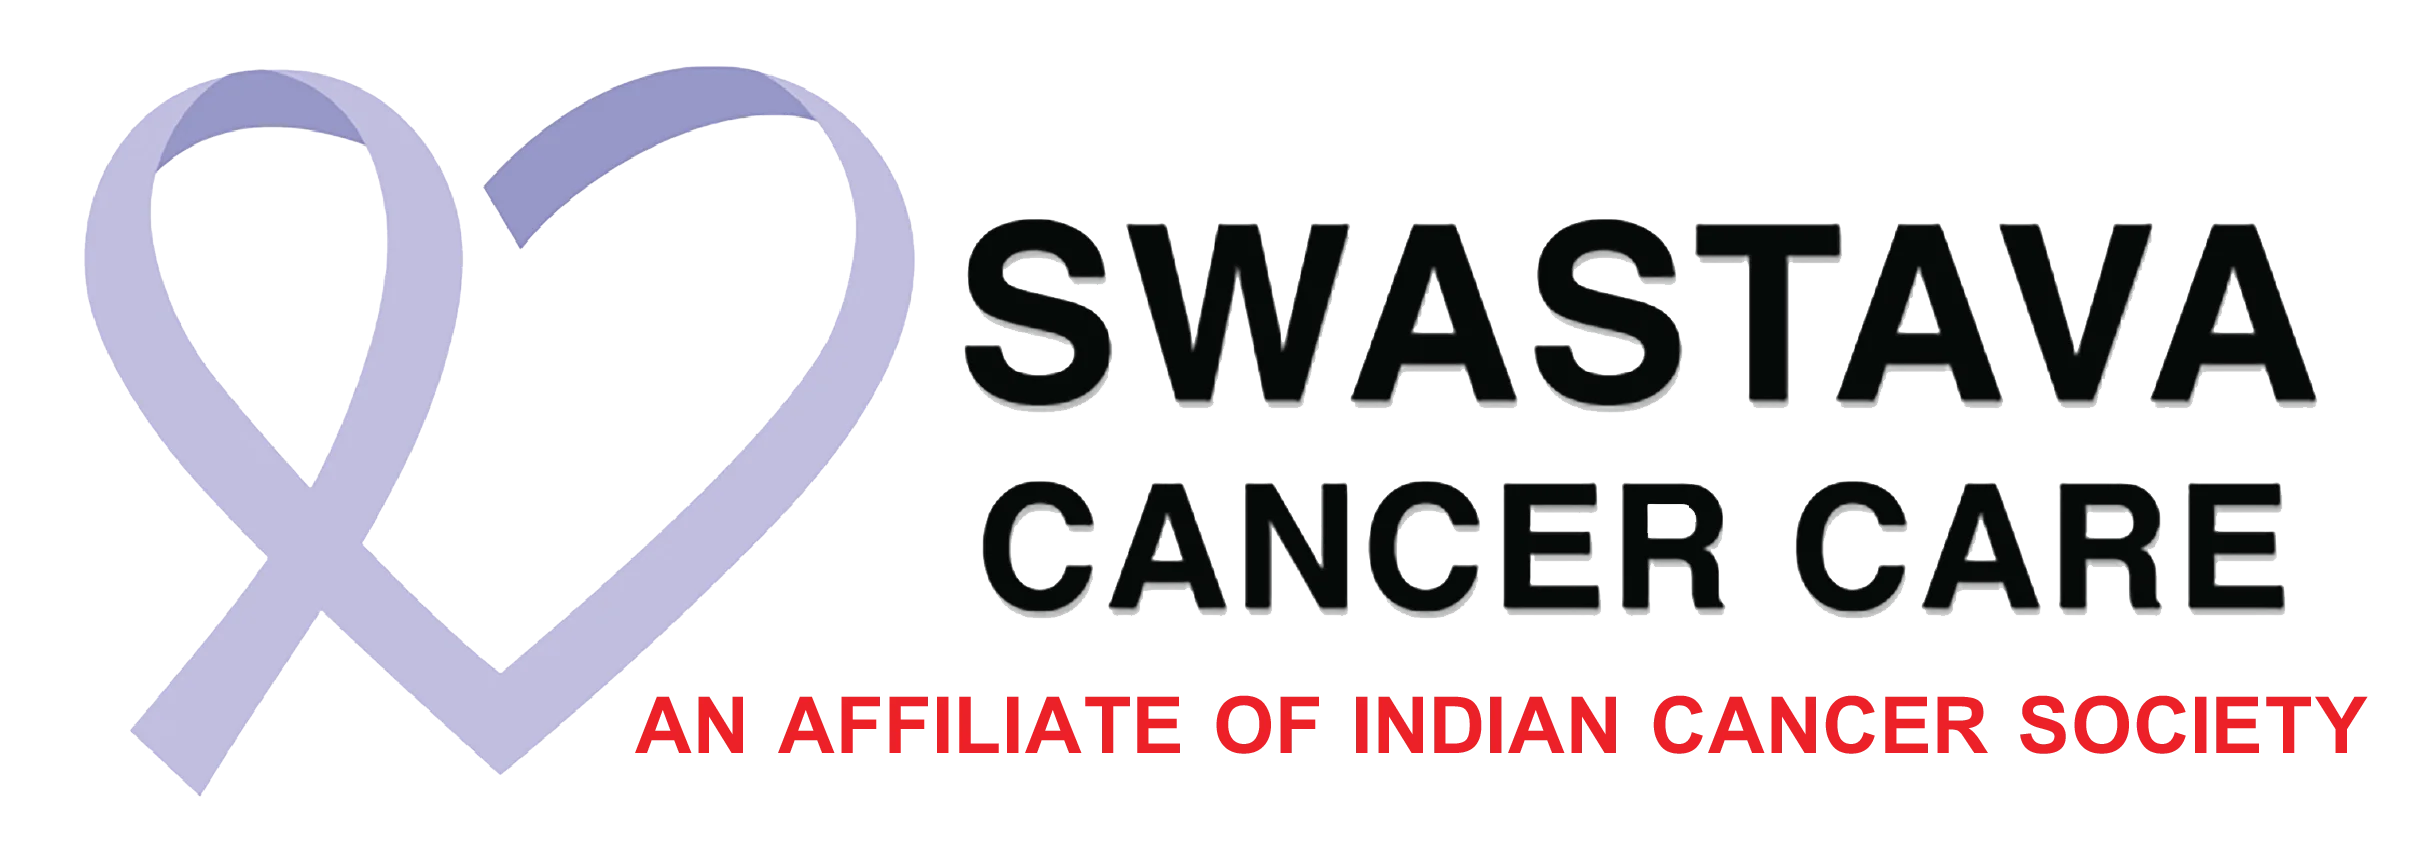 Swastava Cancer Care logo